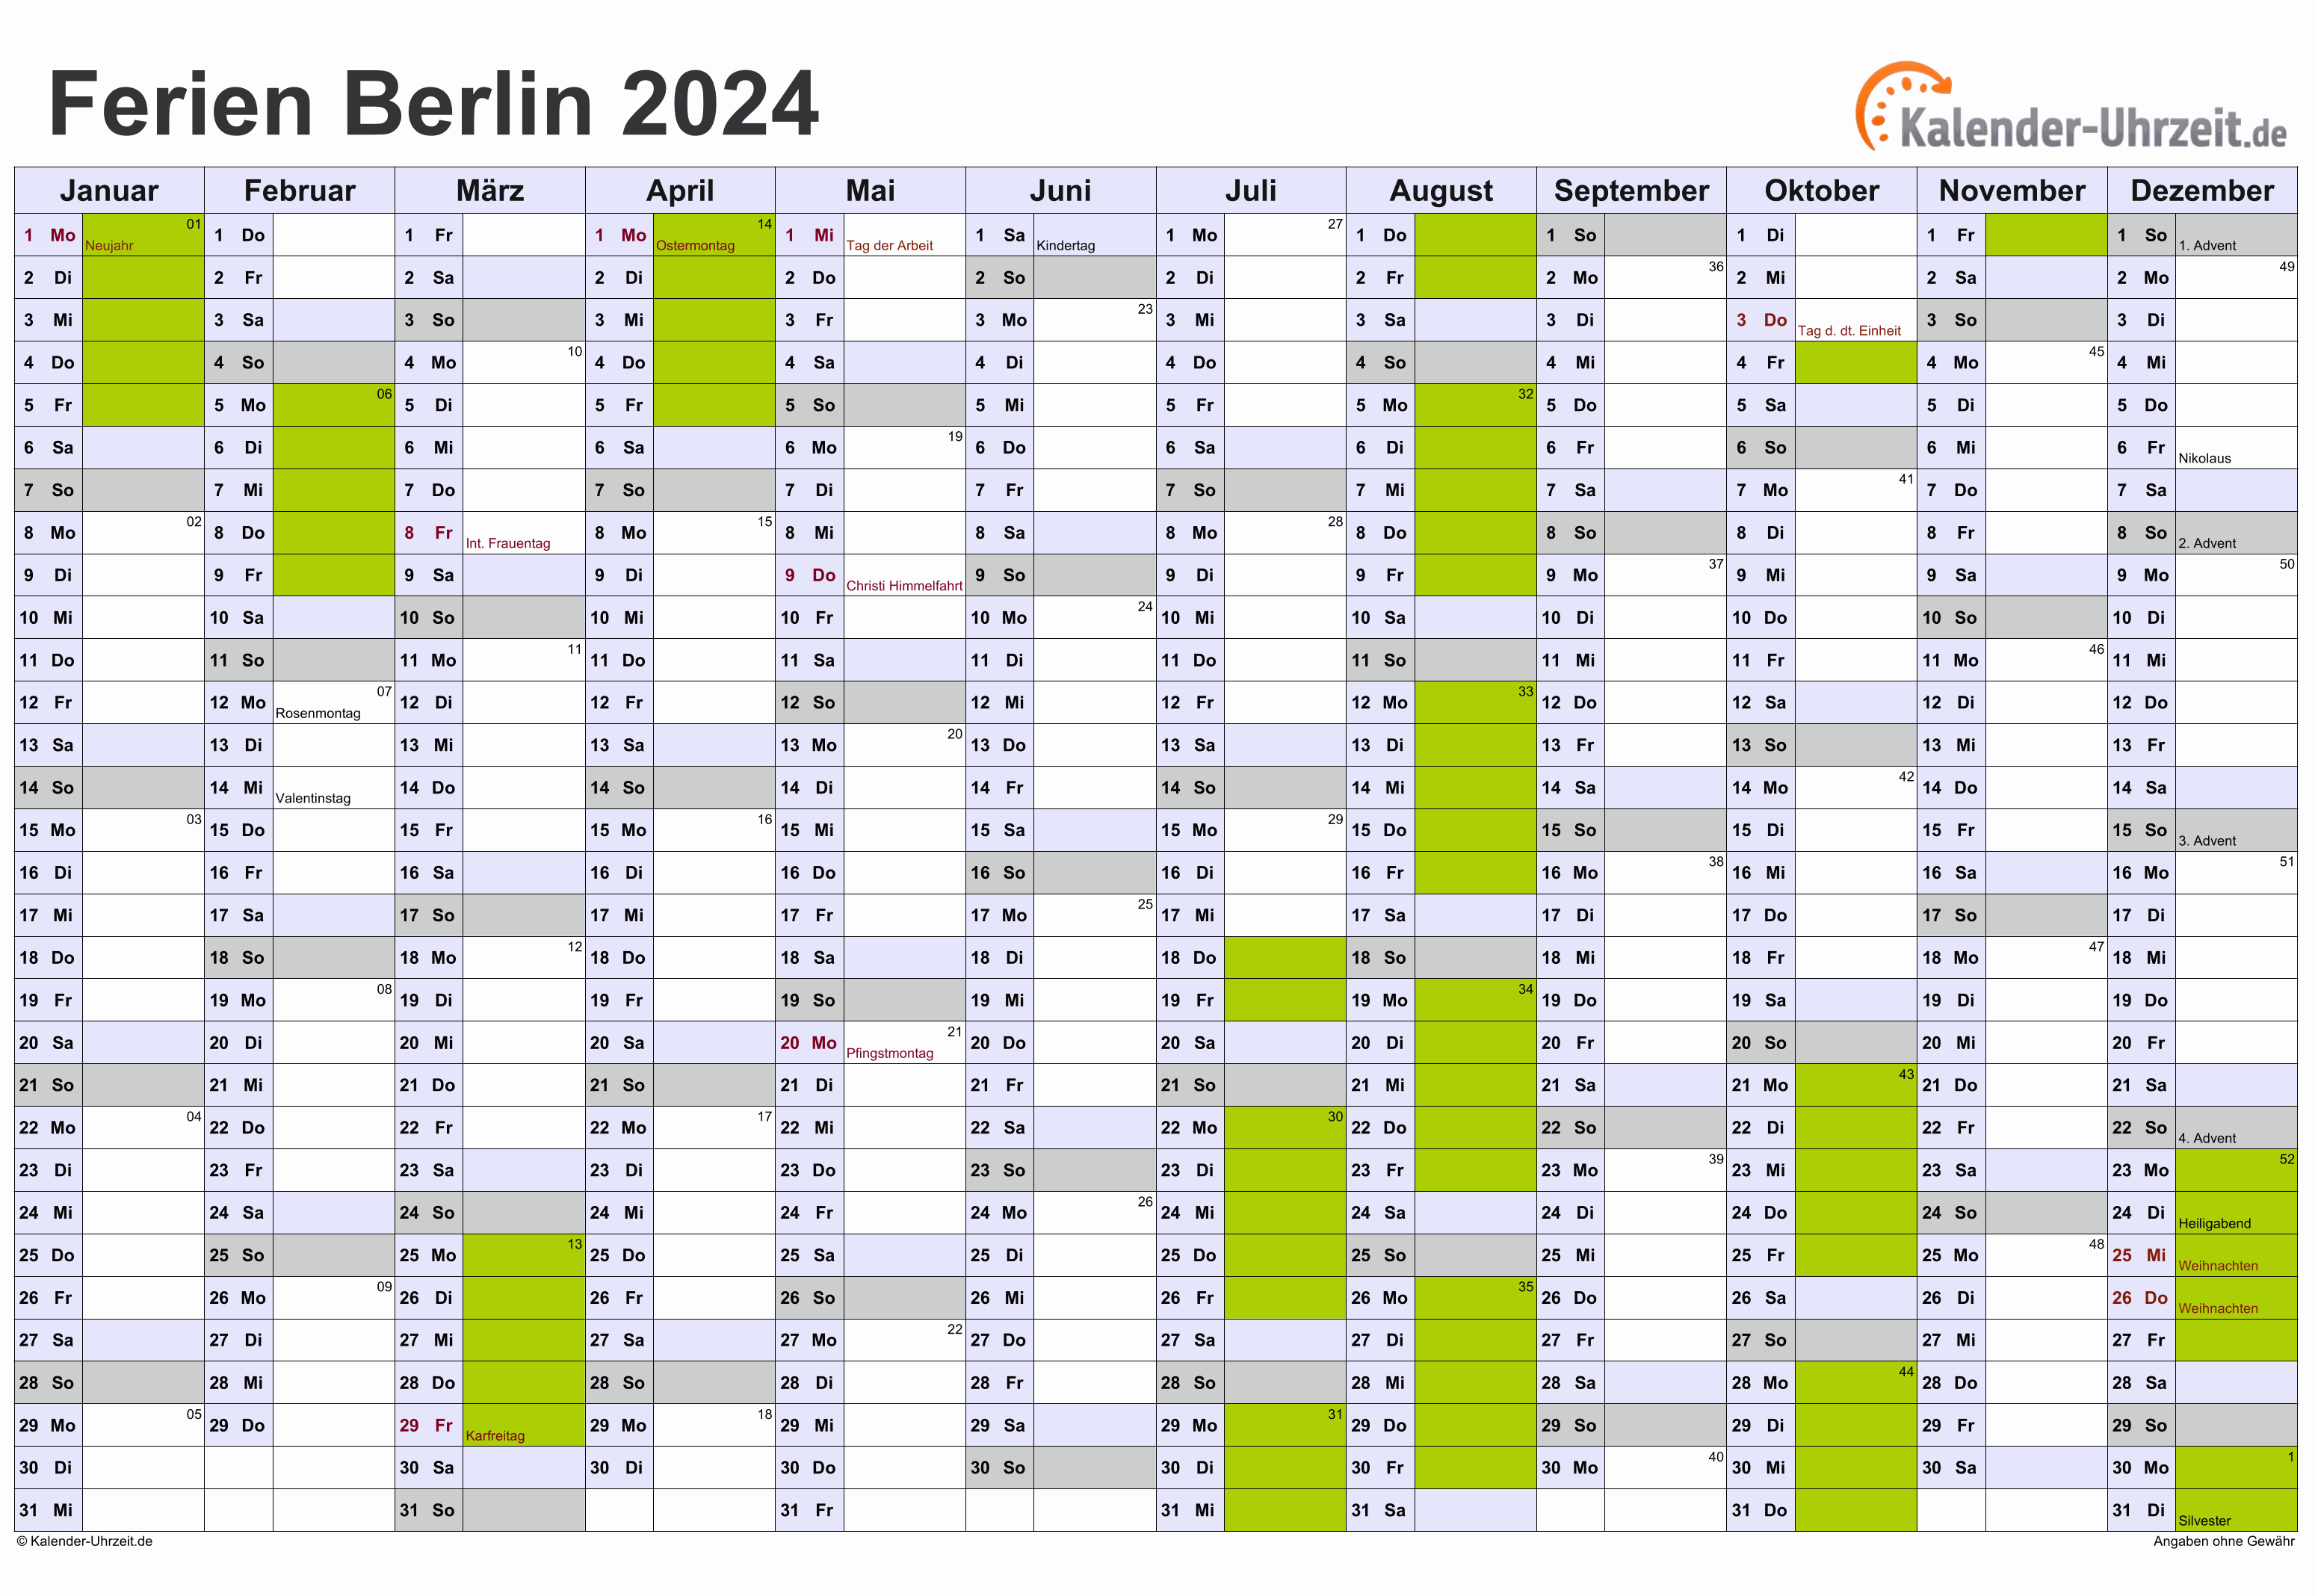 Ferien Berlin 2024 Ferienkalender zum Ausdrucken